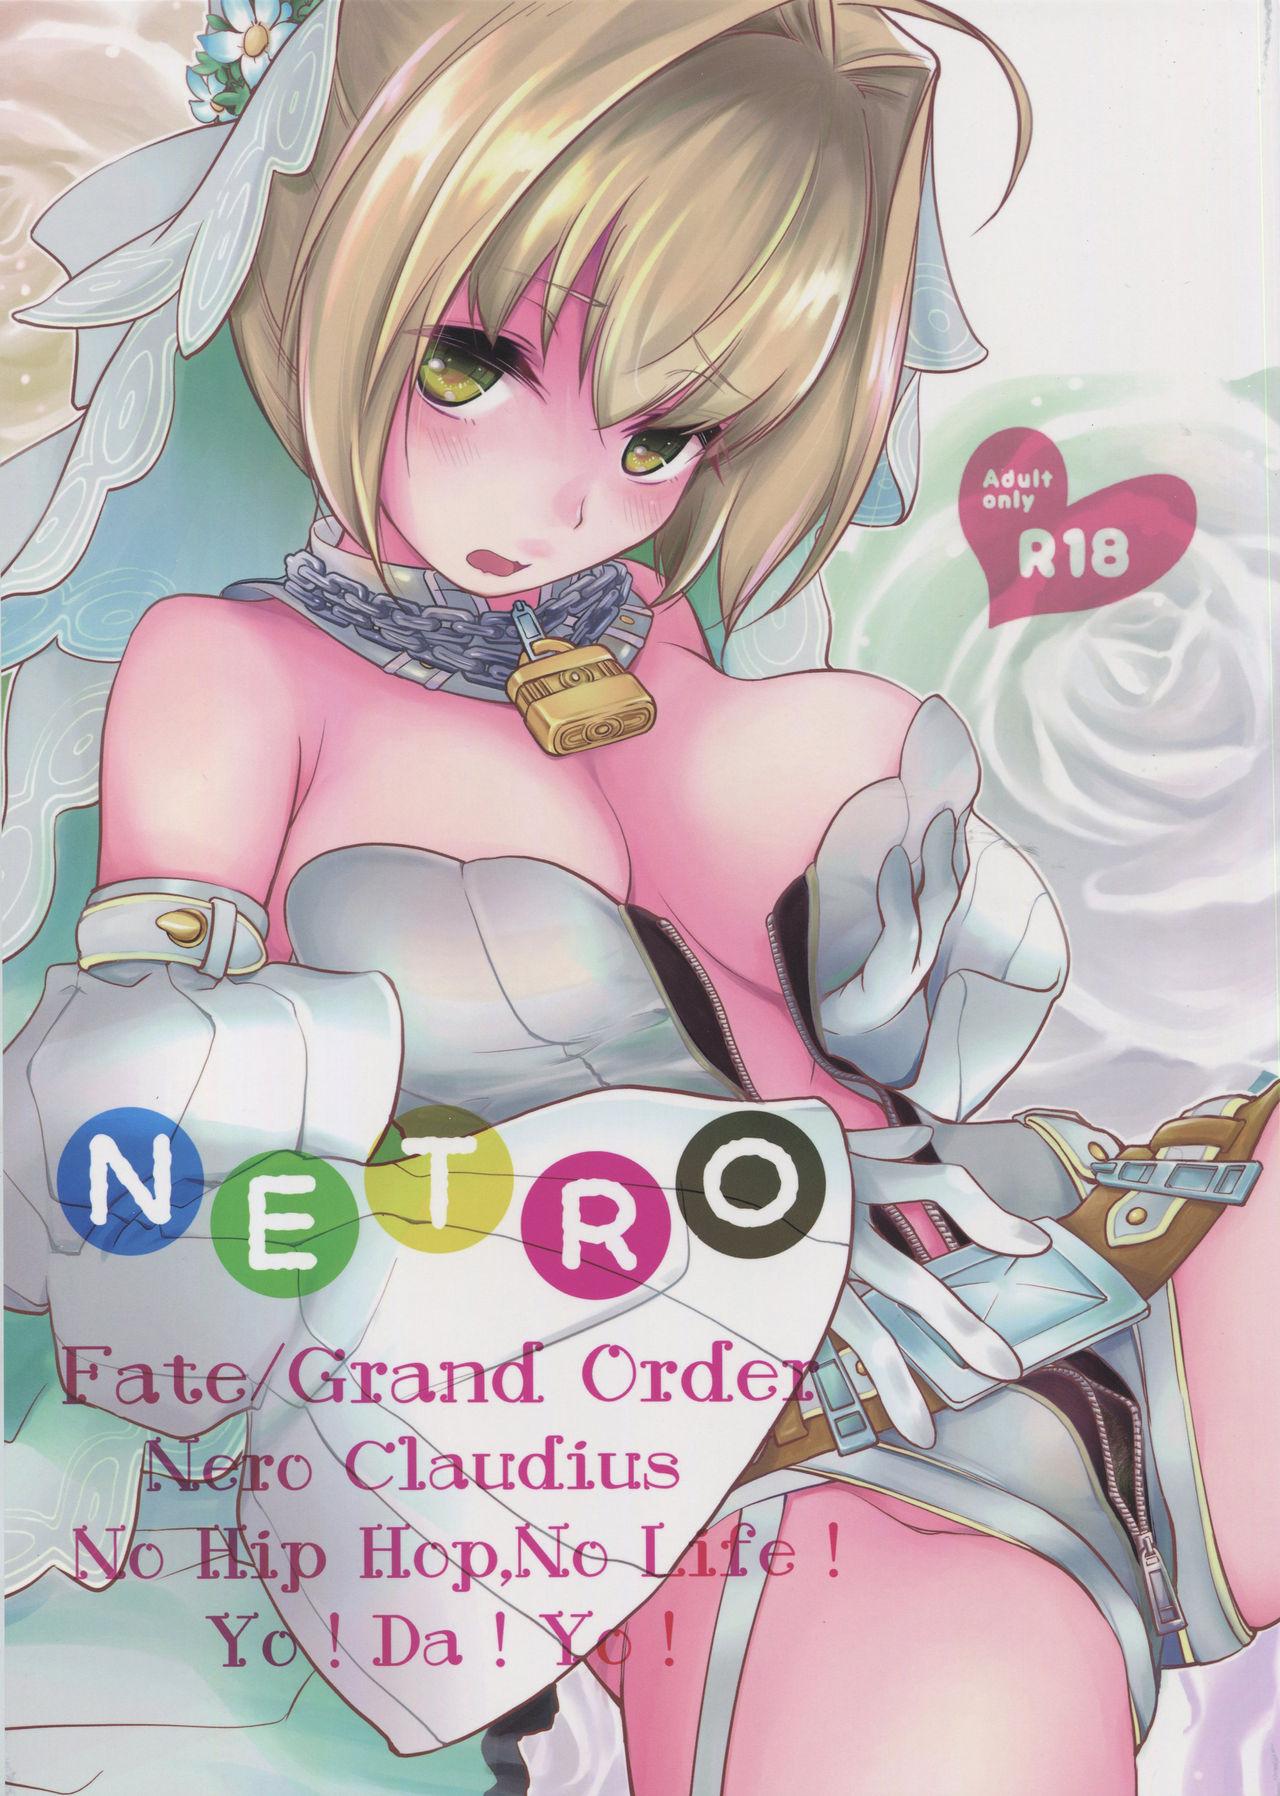 NETRO 0